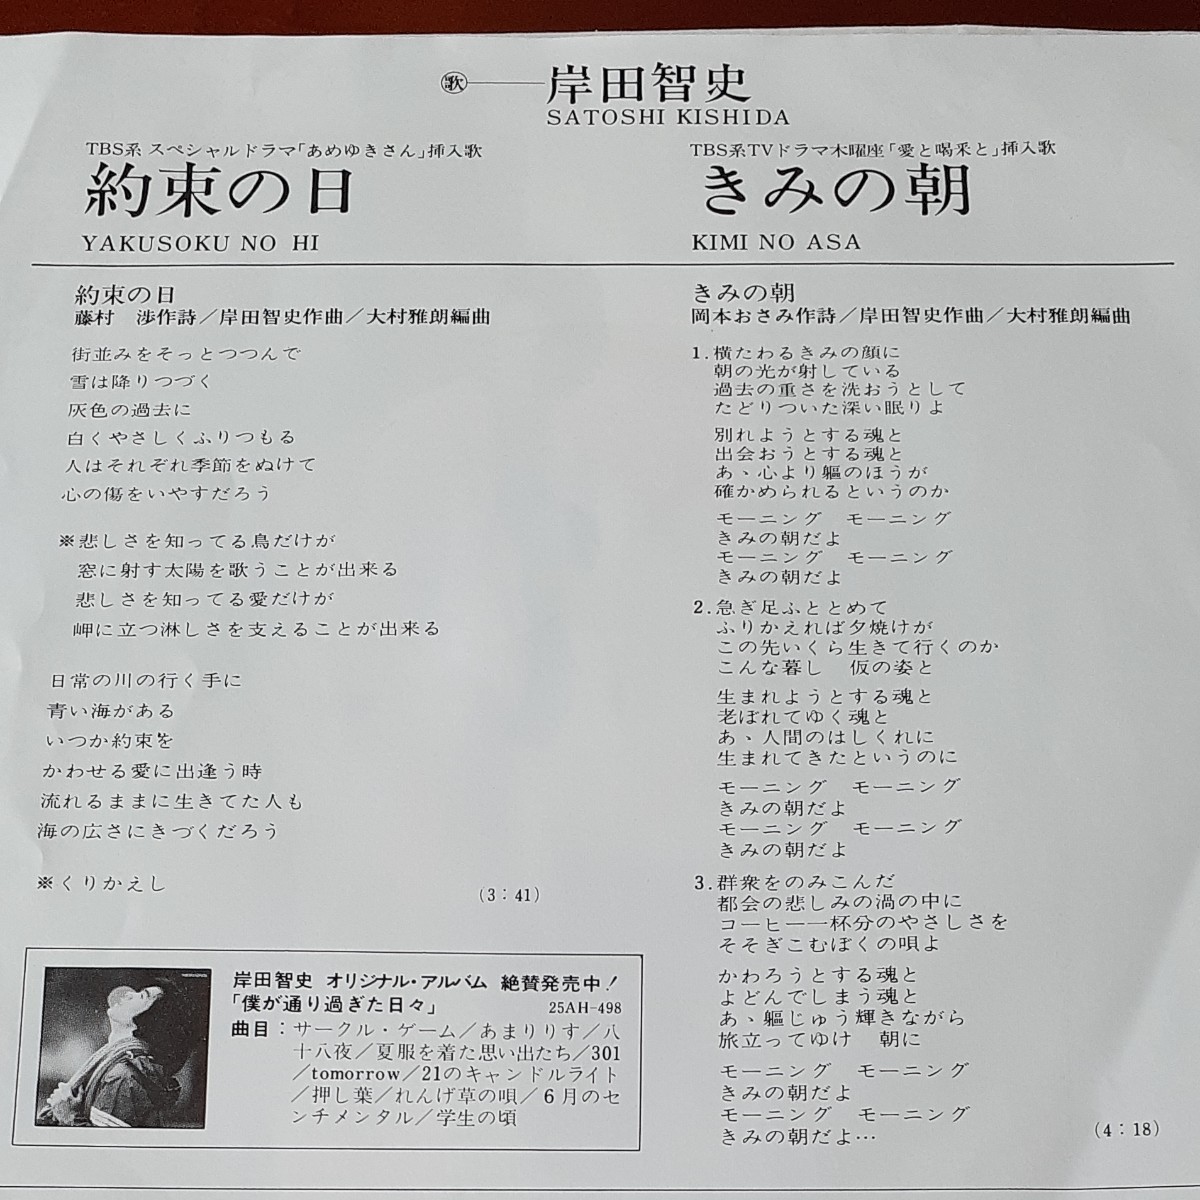 きみの朝 シングルレコード 岸田智史 1979年